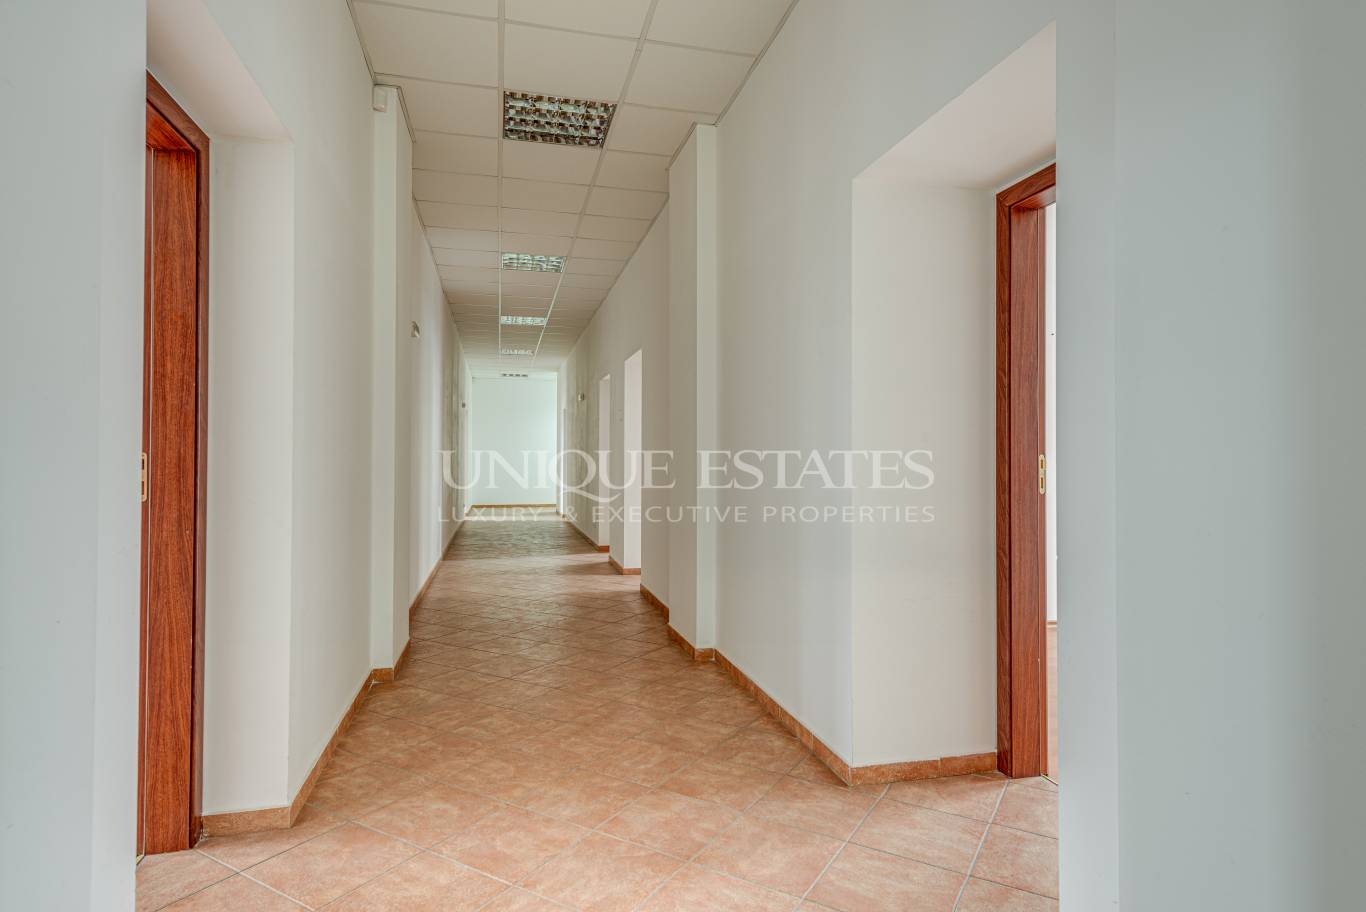 Офис под наем в София, Център - код на имота: K4831 - image 8